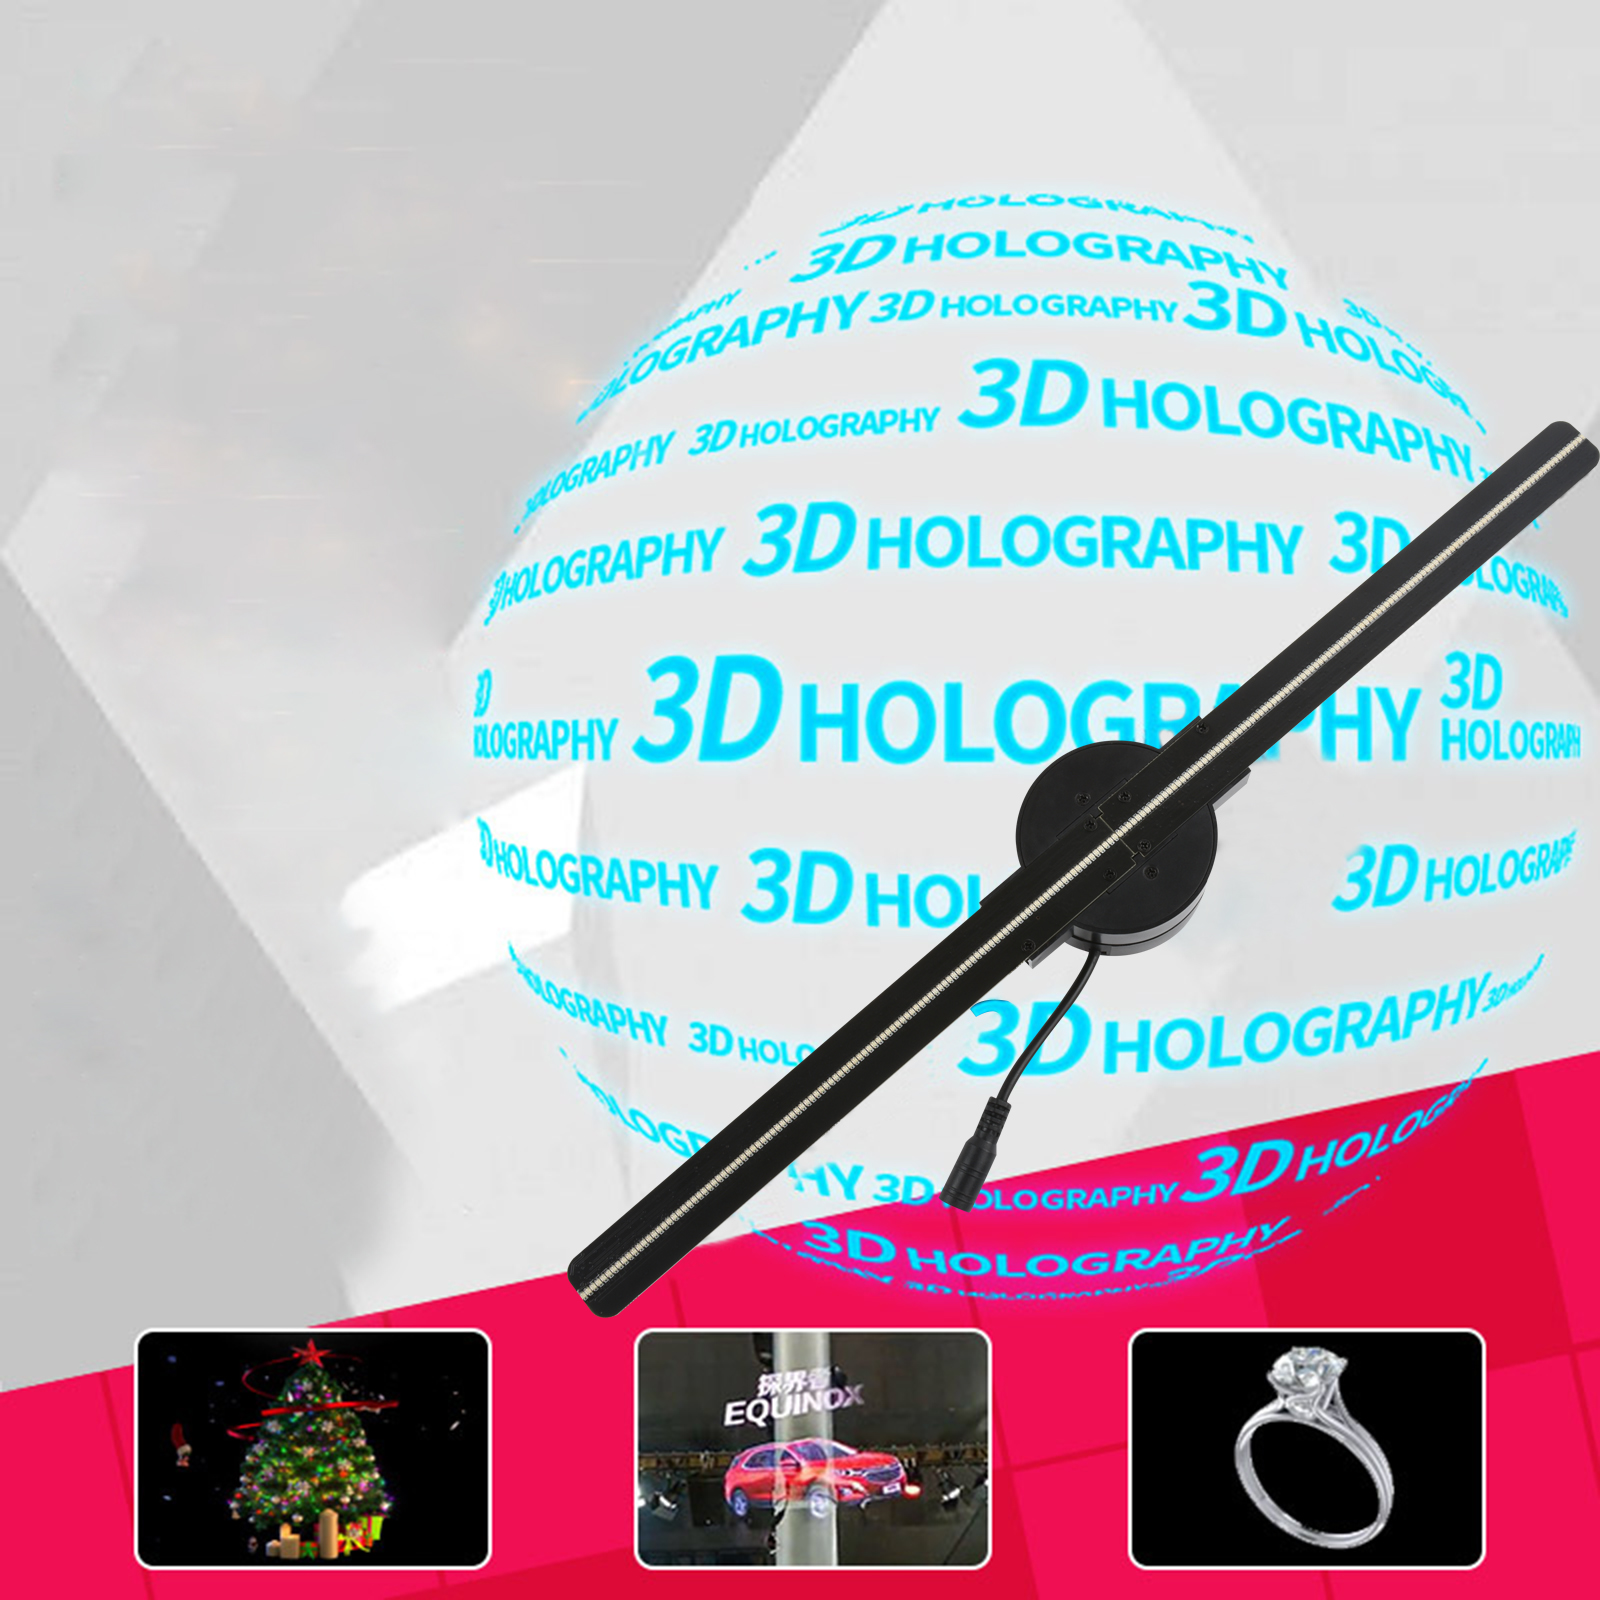 42cm WiFi Holograma 3D Projecteur ventilateur 224 LED HOLOSIGNE publicitaire image machine image vidéo Hologram Player Logo Affichage